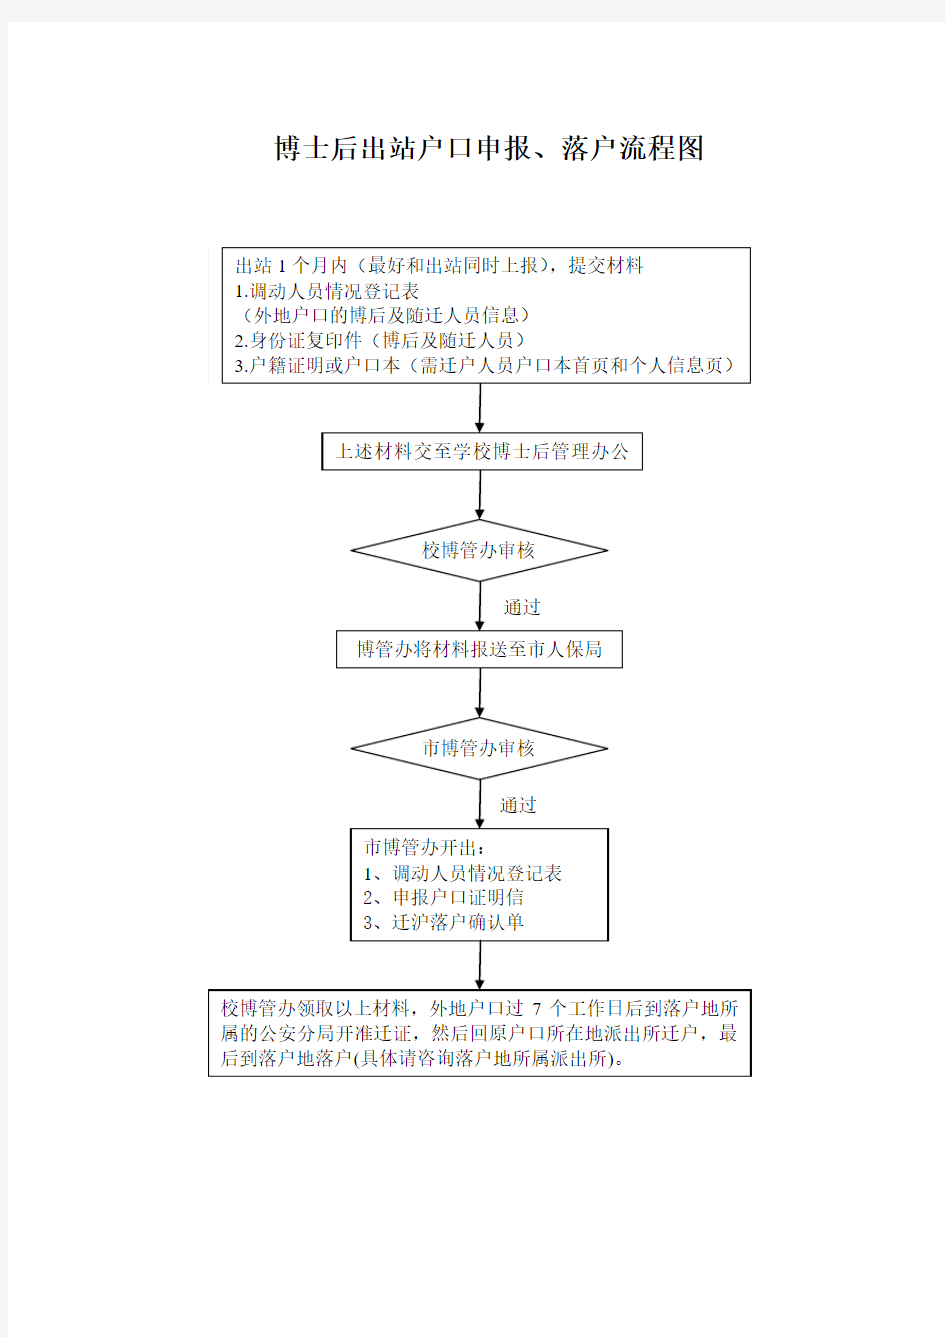 上海交通大学 博士后出站户口申报、落户流程图